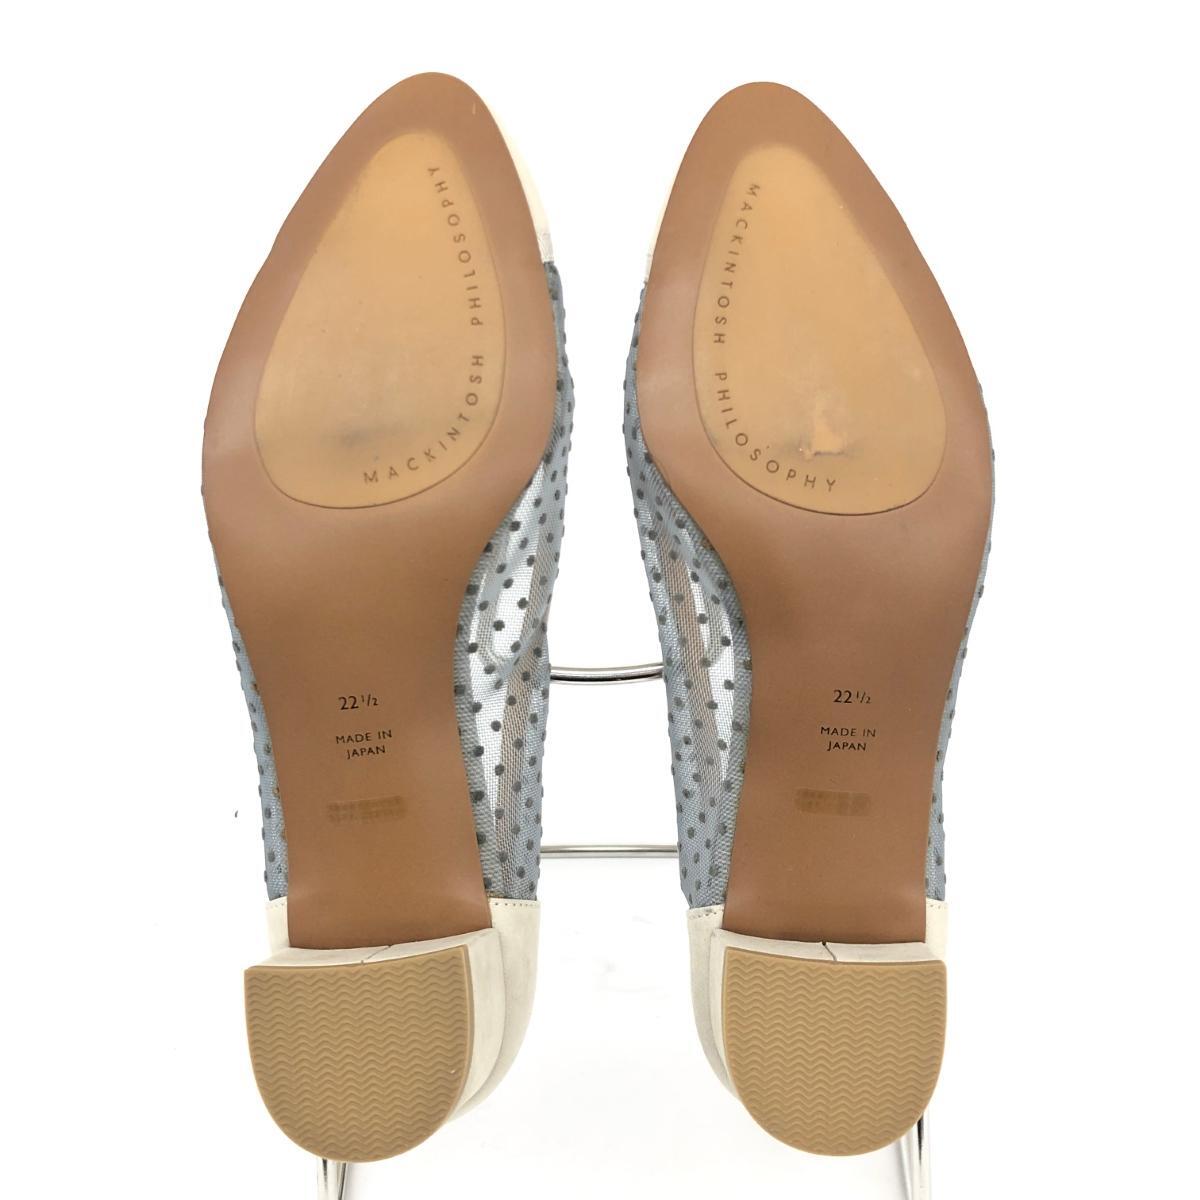  как новый *MACKINTOSH PHILOSOPHY Macintosh firosofi- туфли-лодочки 22.5* серый sia- точка женский обувь обувь shoes